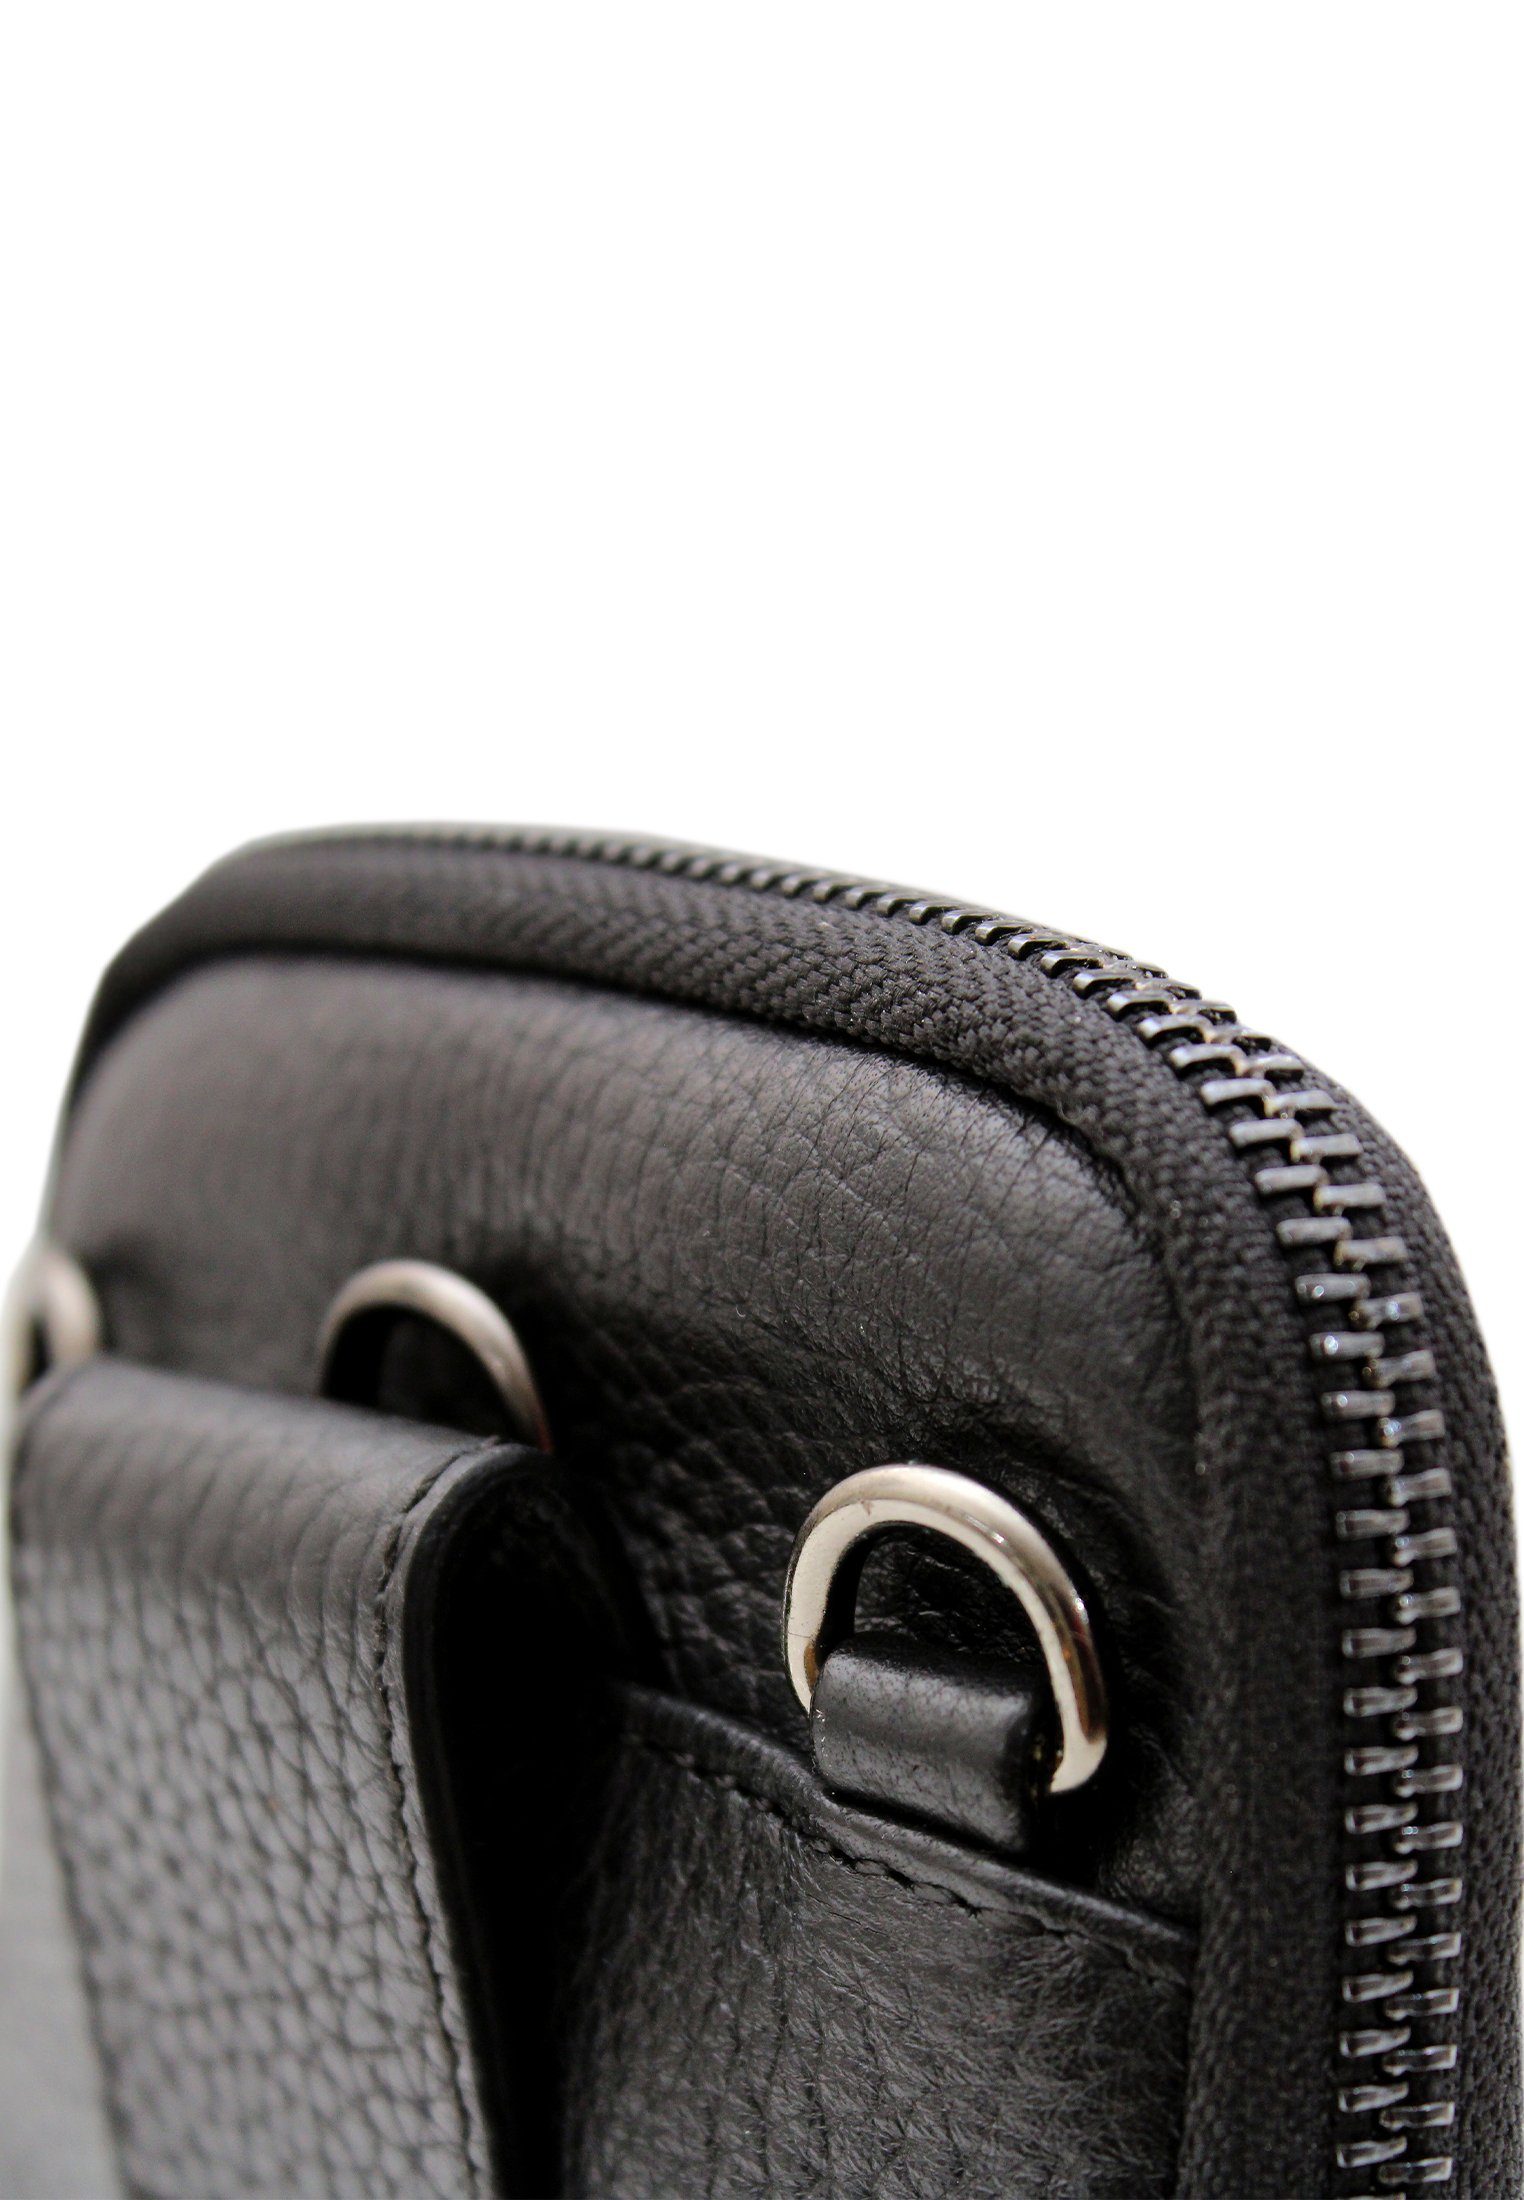 Smartphonetasche Umhängegurt schwarz, Büffel NOVARA mit längenverstellbarem Pouch Braun Phone